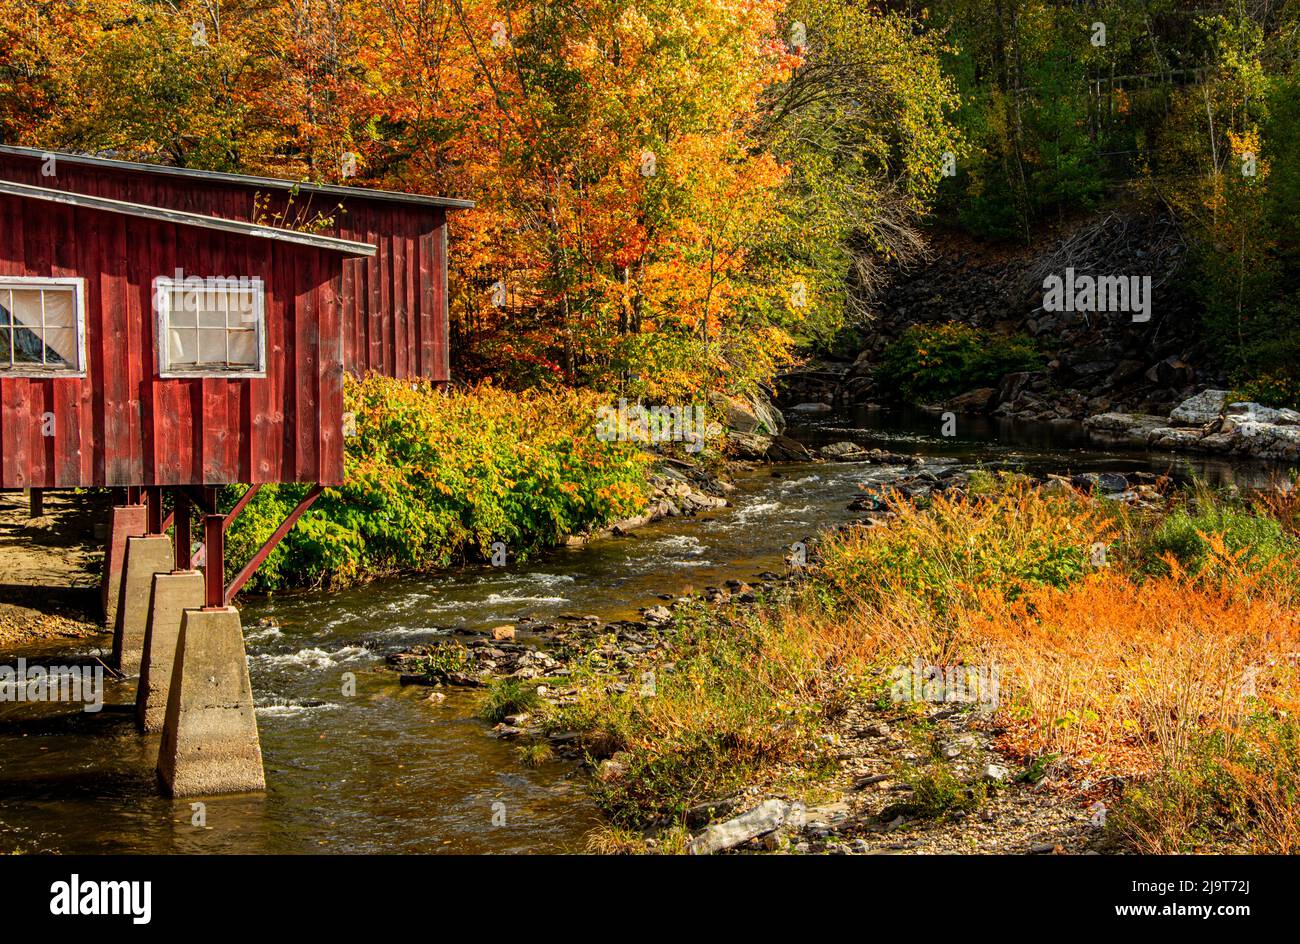 USA, Vermont, Stowe, rote Mühle am Little River, die südlich von Stowe zum Winooski River fließt, Herbstlaub Stockfoto